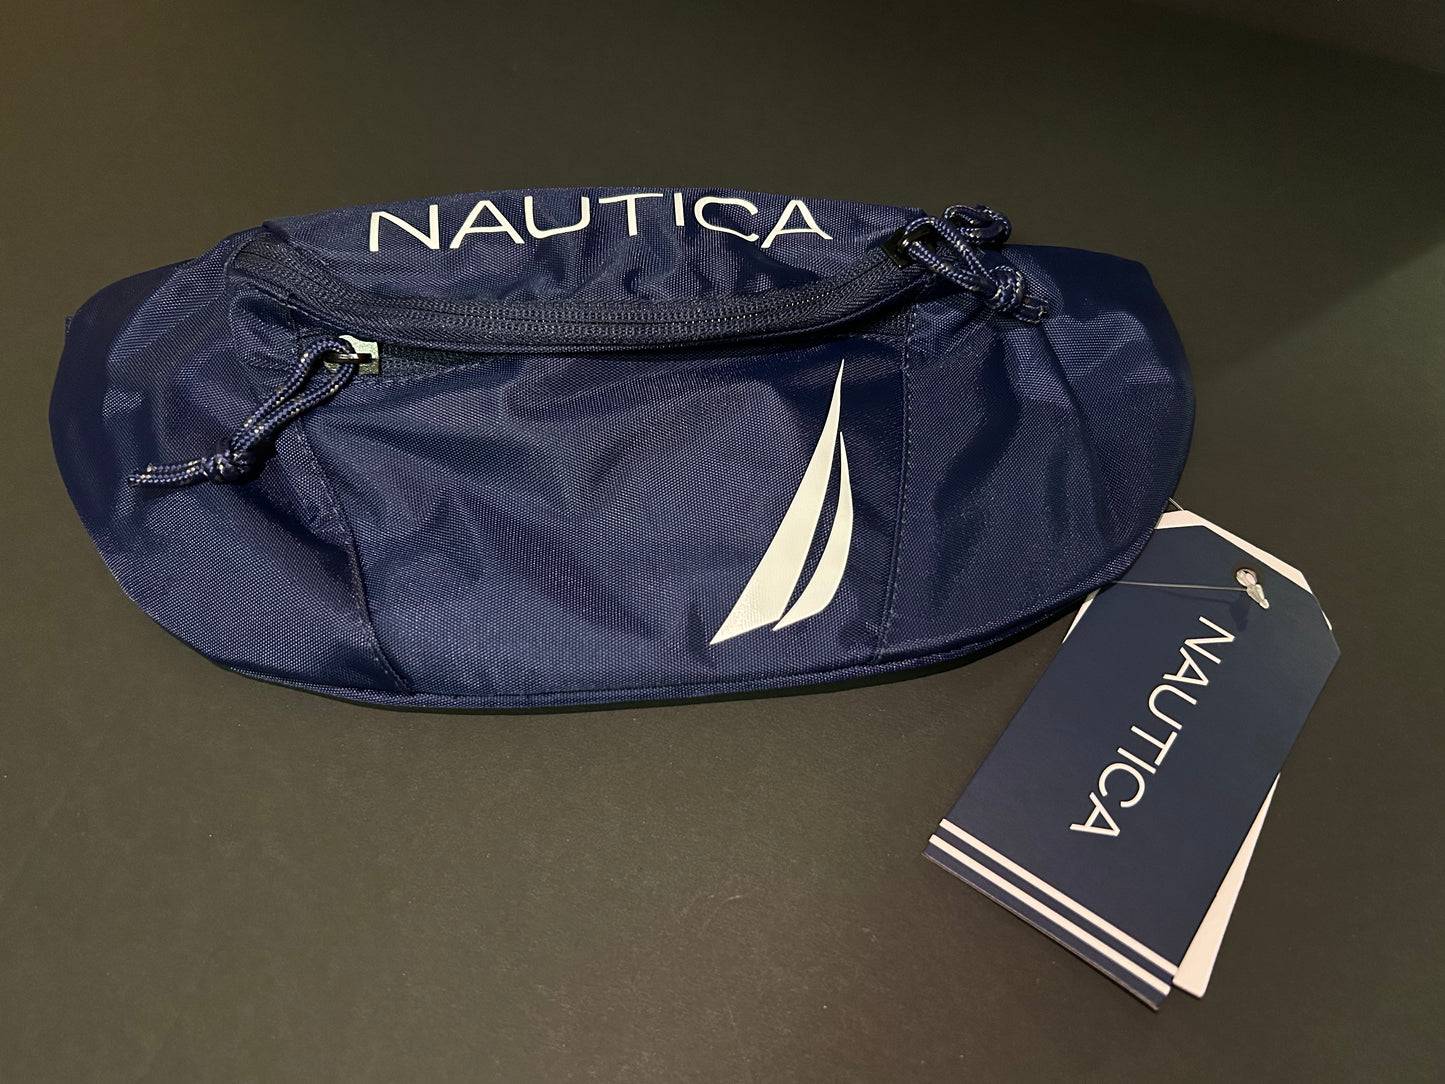 Nautica Bags